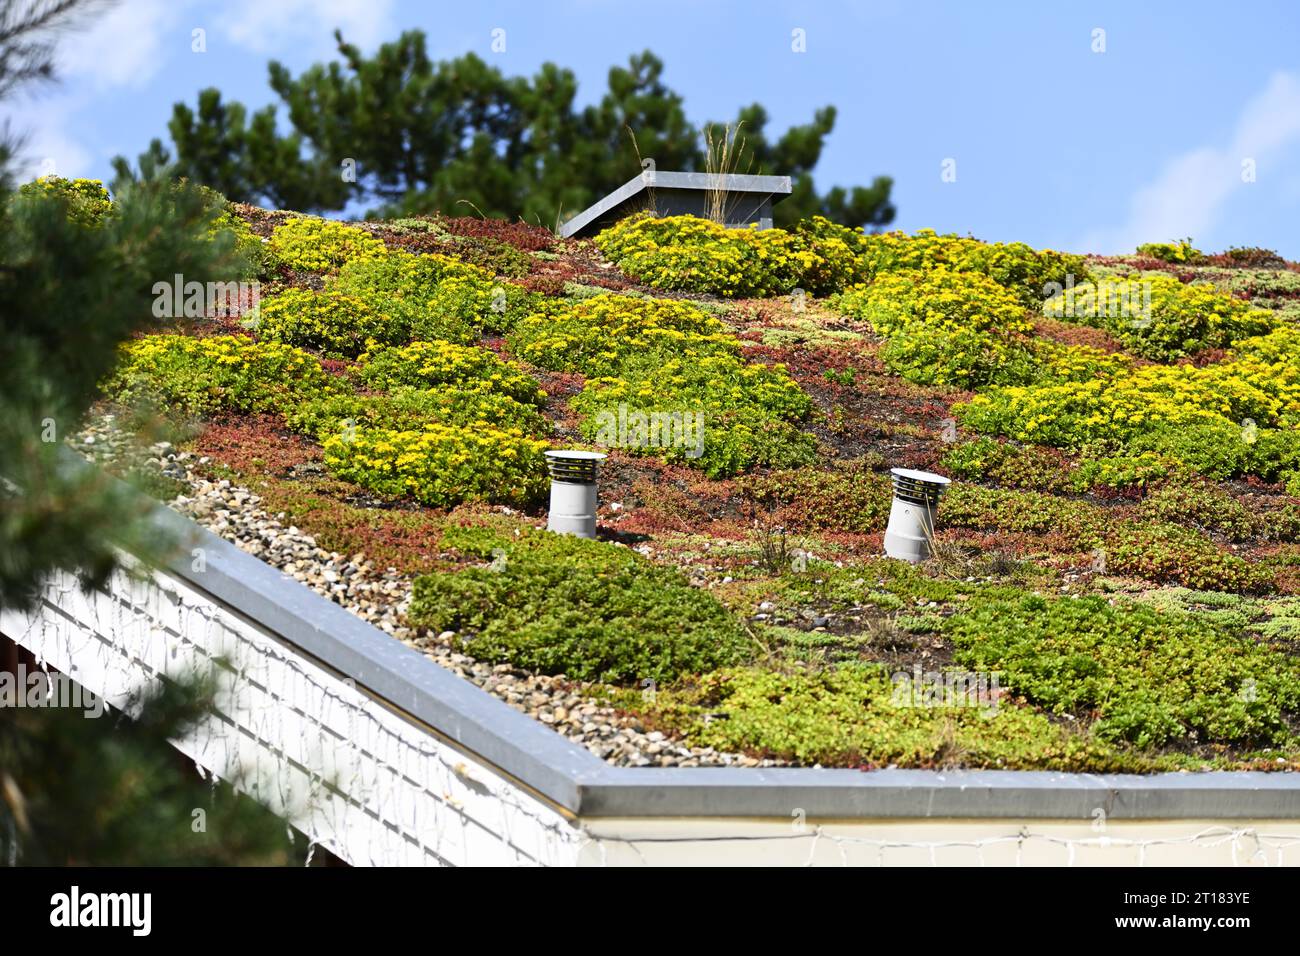 Natürliche Dachbepflanzung in Scharbeutz, Schleswig-Holstein, Deutschland, Europa Banque D'Images